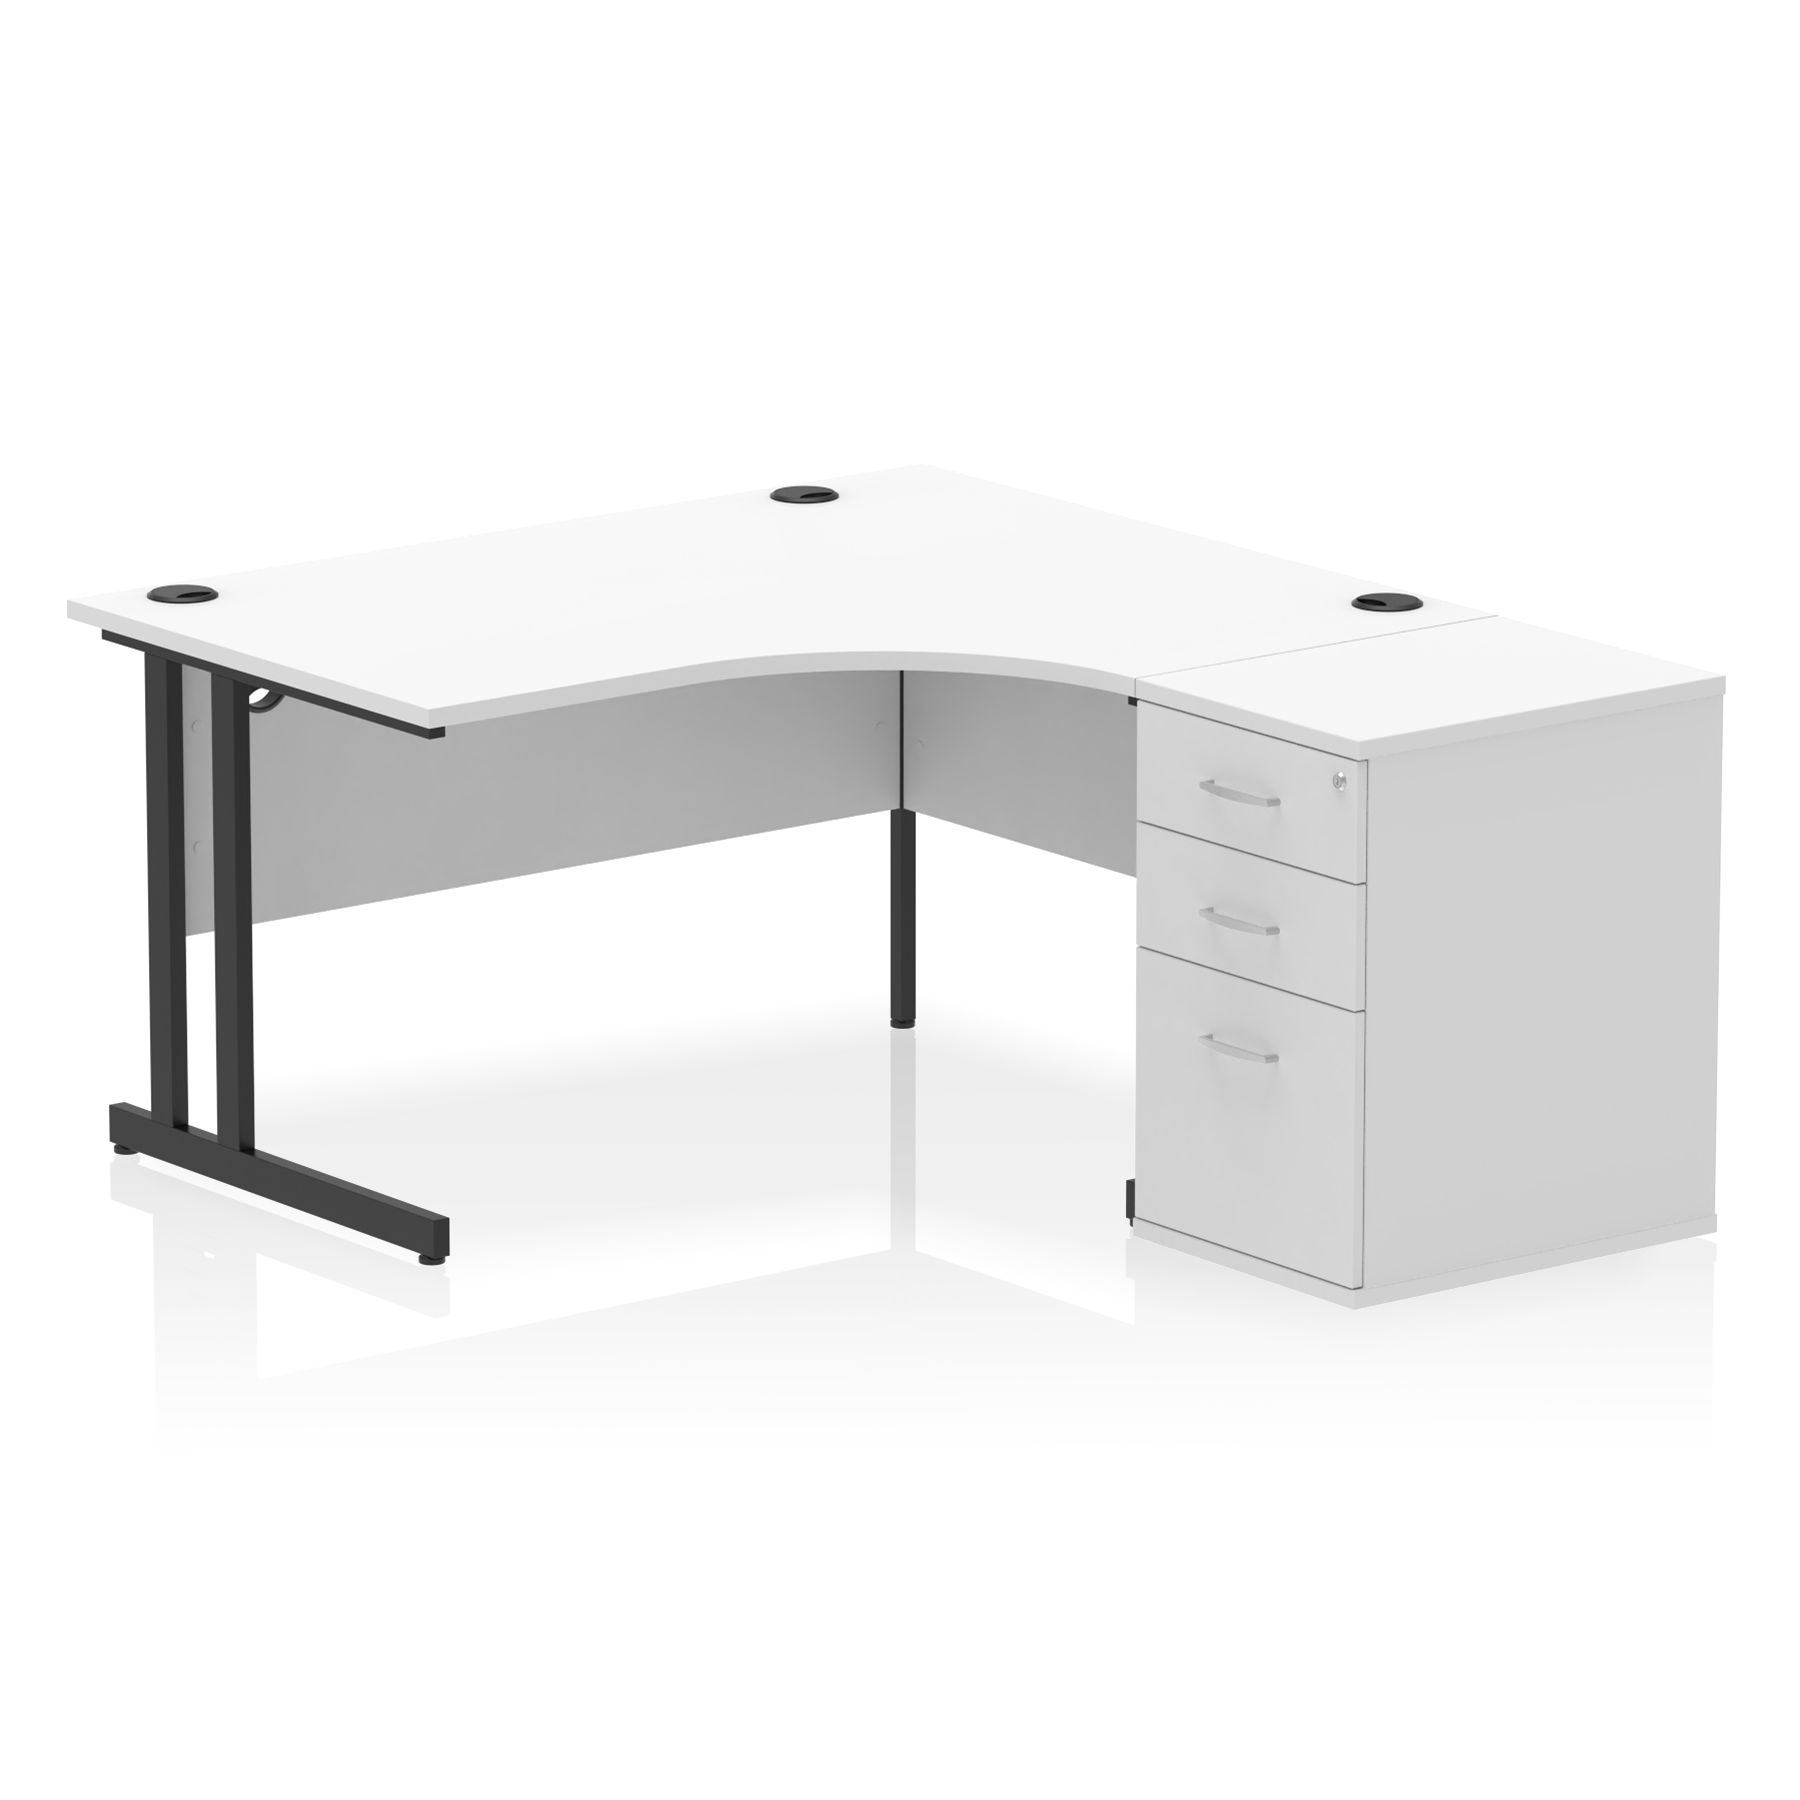 Impulse 1400mm Cantilever Right Crescent Desk Workstation